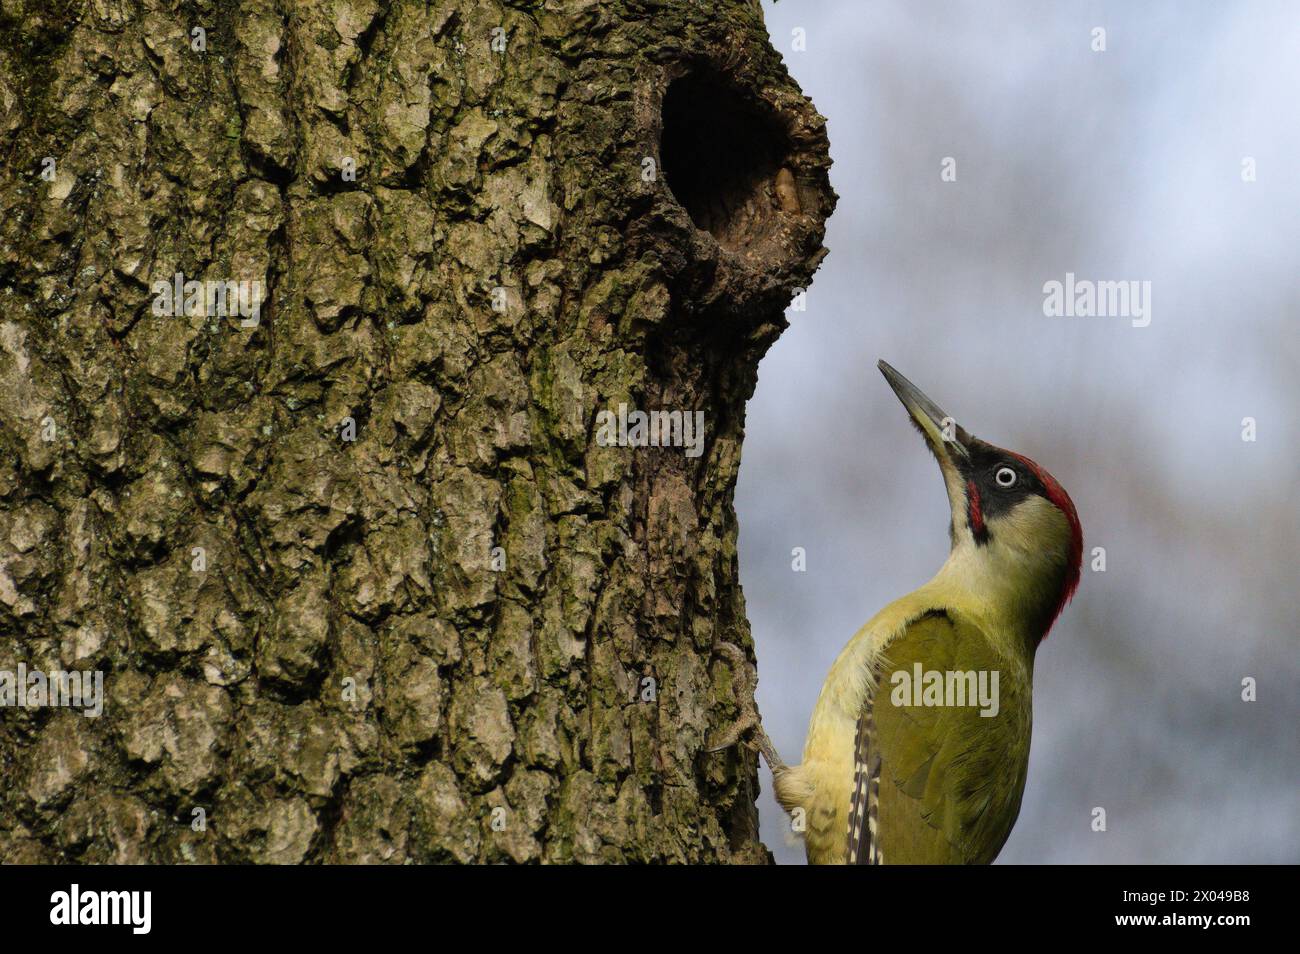 L'uccello Picus viridis, noto anche come picchio verde europeo, si sta arrampicando sull'albero. Foto Stock